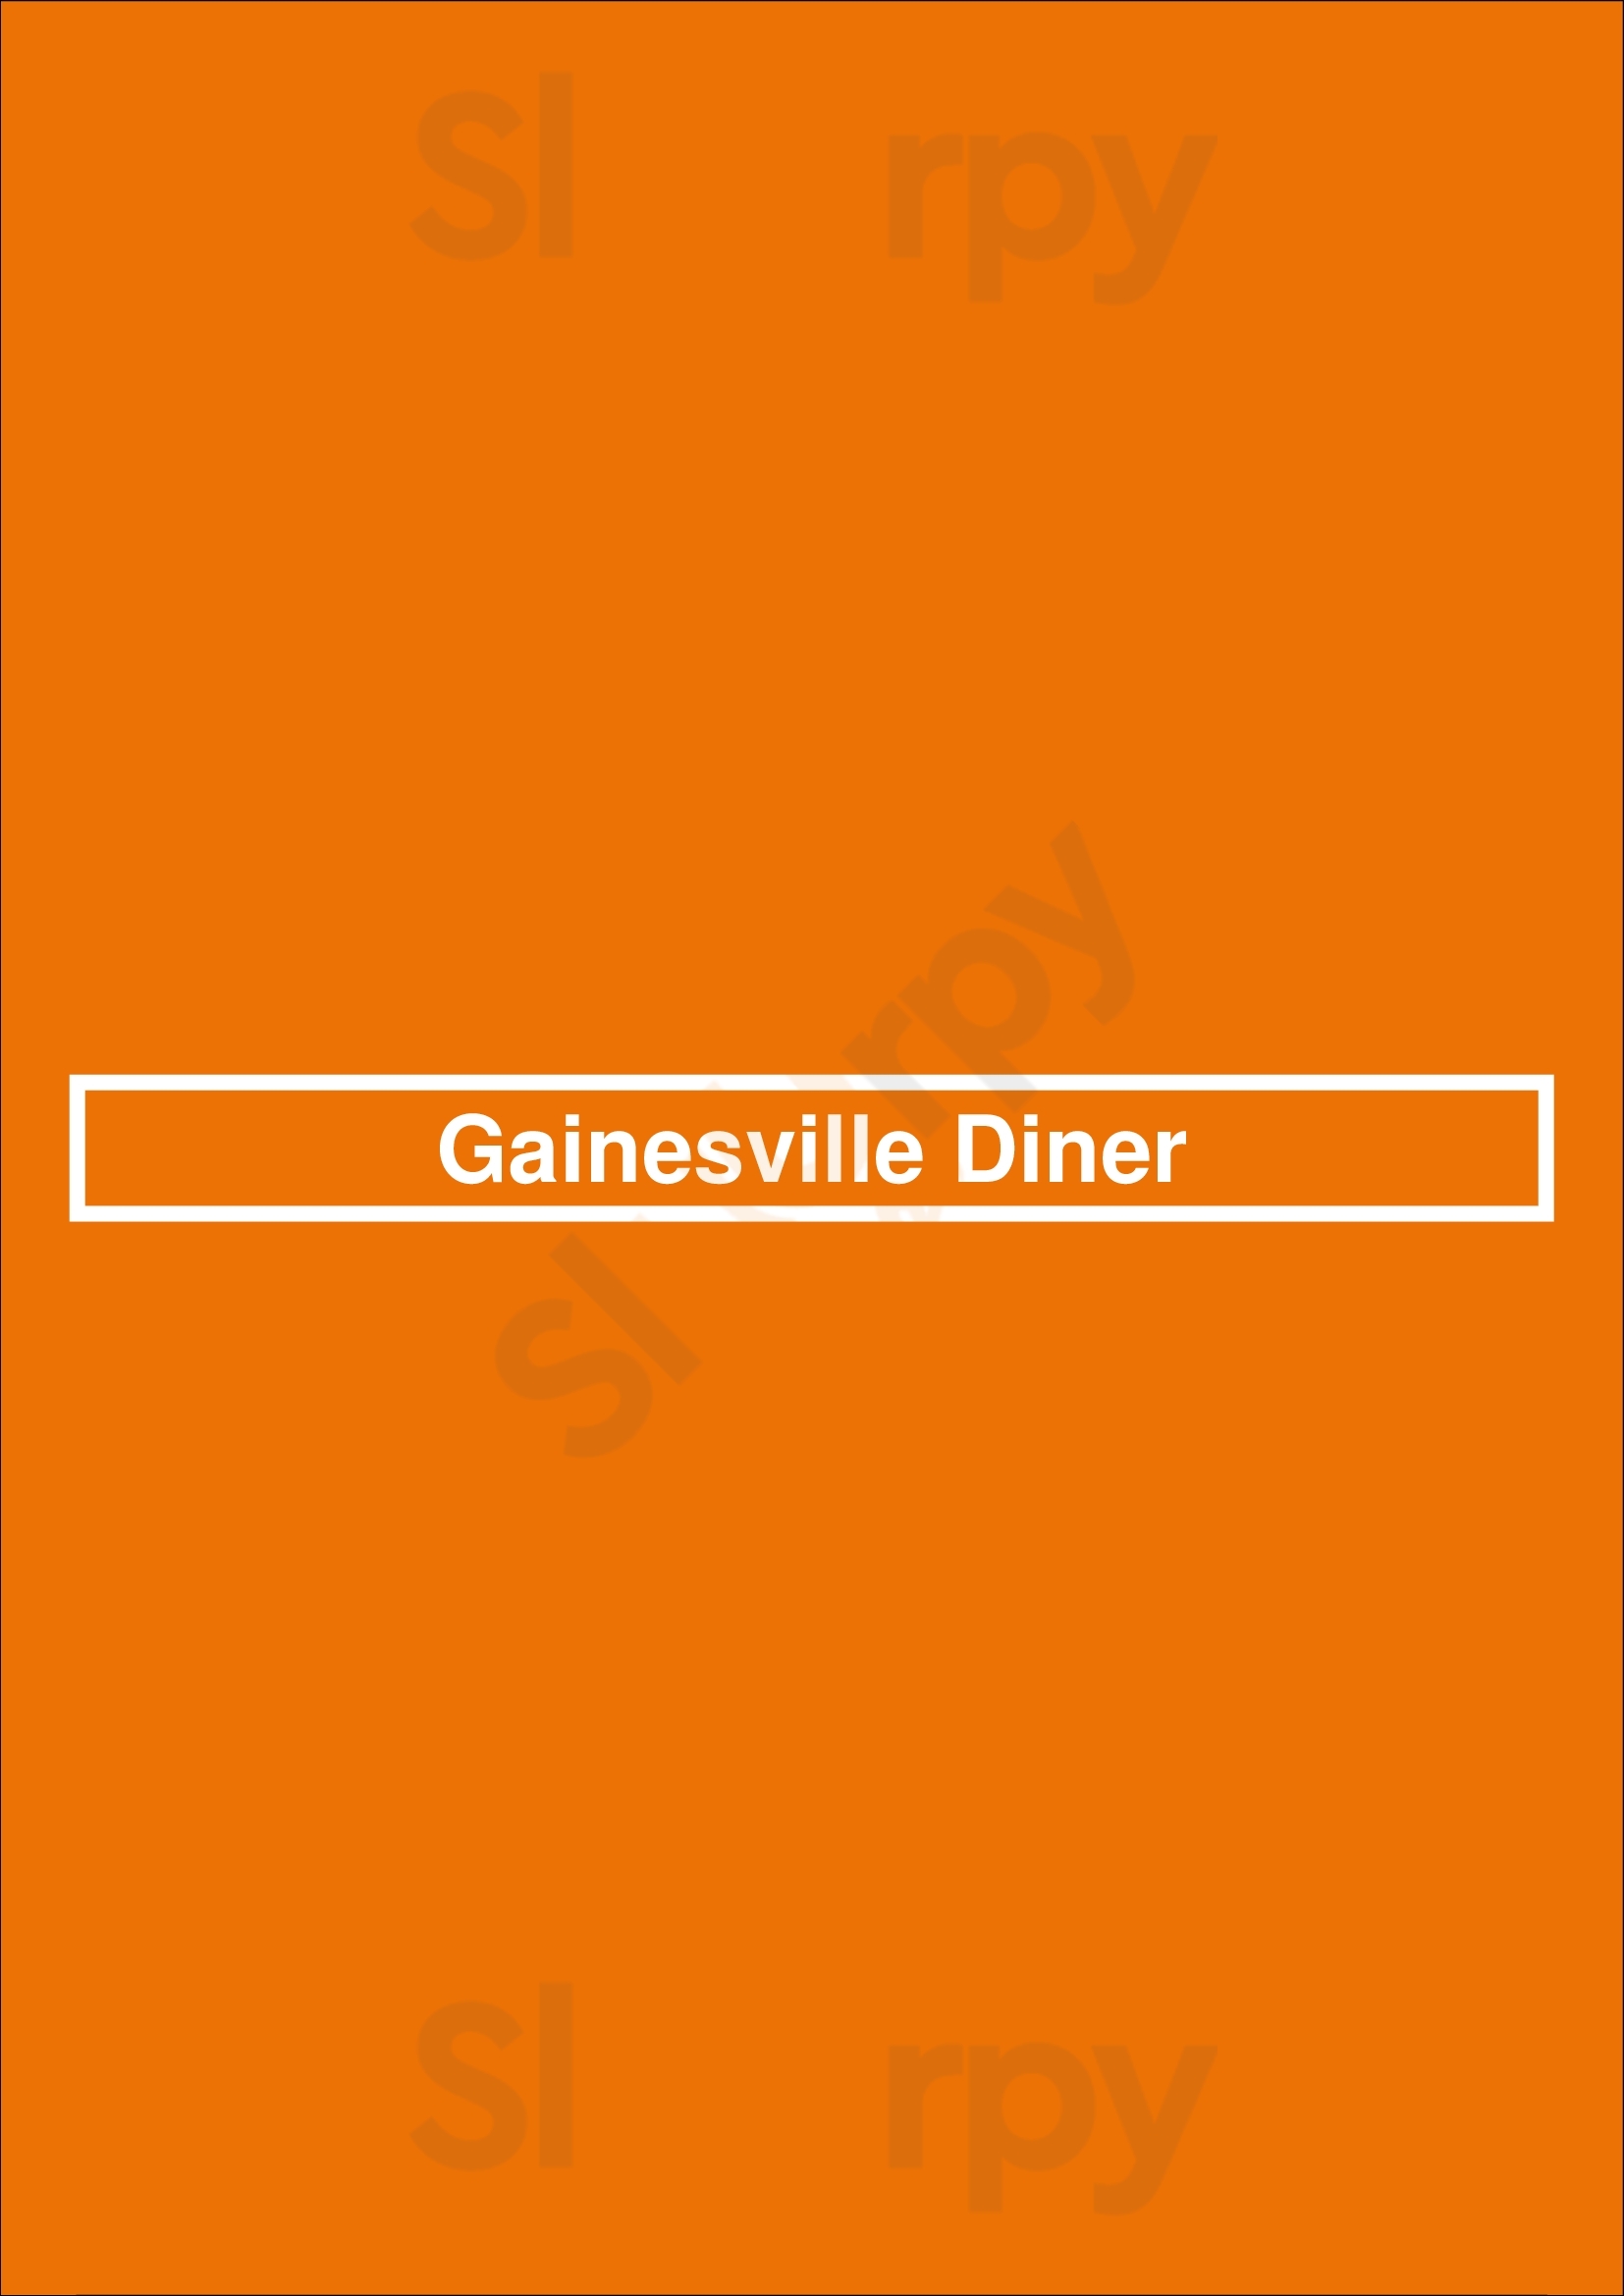 Gainesville Diner Gainesville Menu - 1